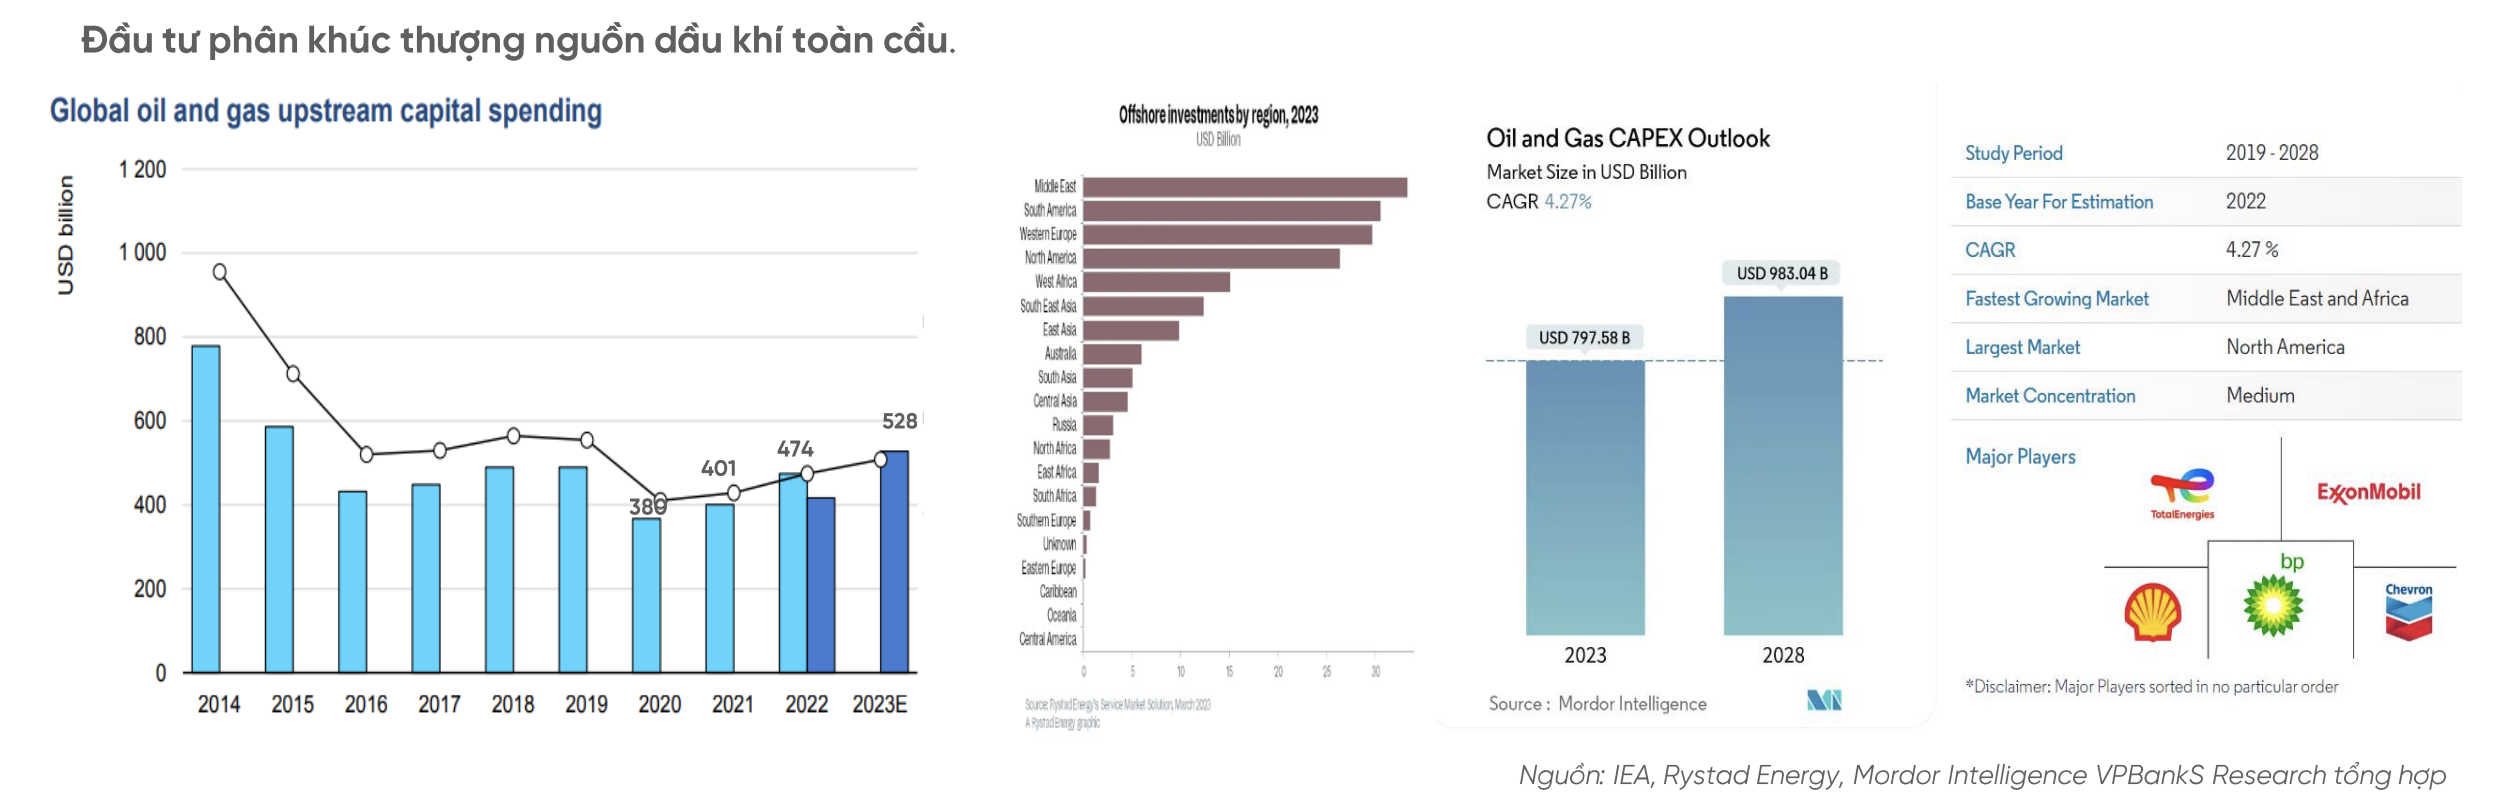 Cổ phiếu ngành dầu khí sẽ tiếp tục bứt phá nhờ hưởng lợi dự án thượng nguồn và điện khí LNG 2